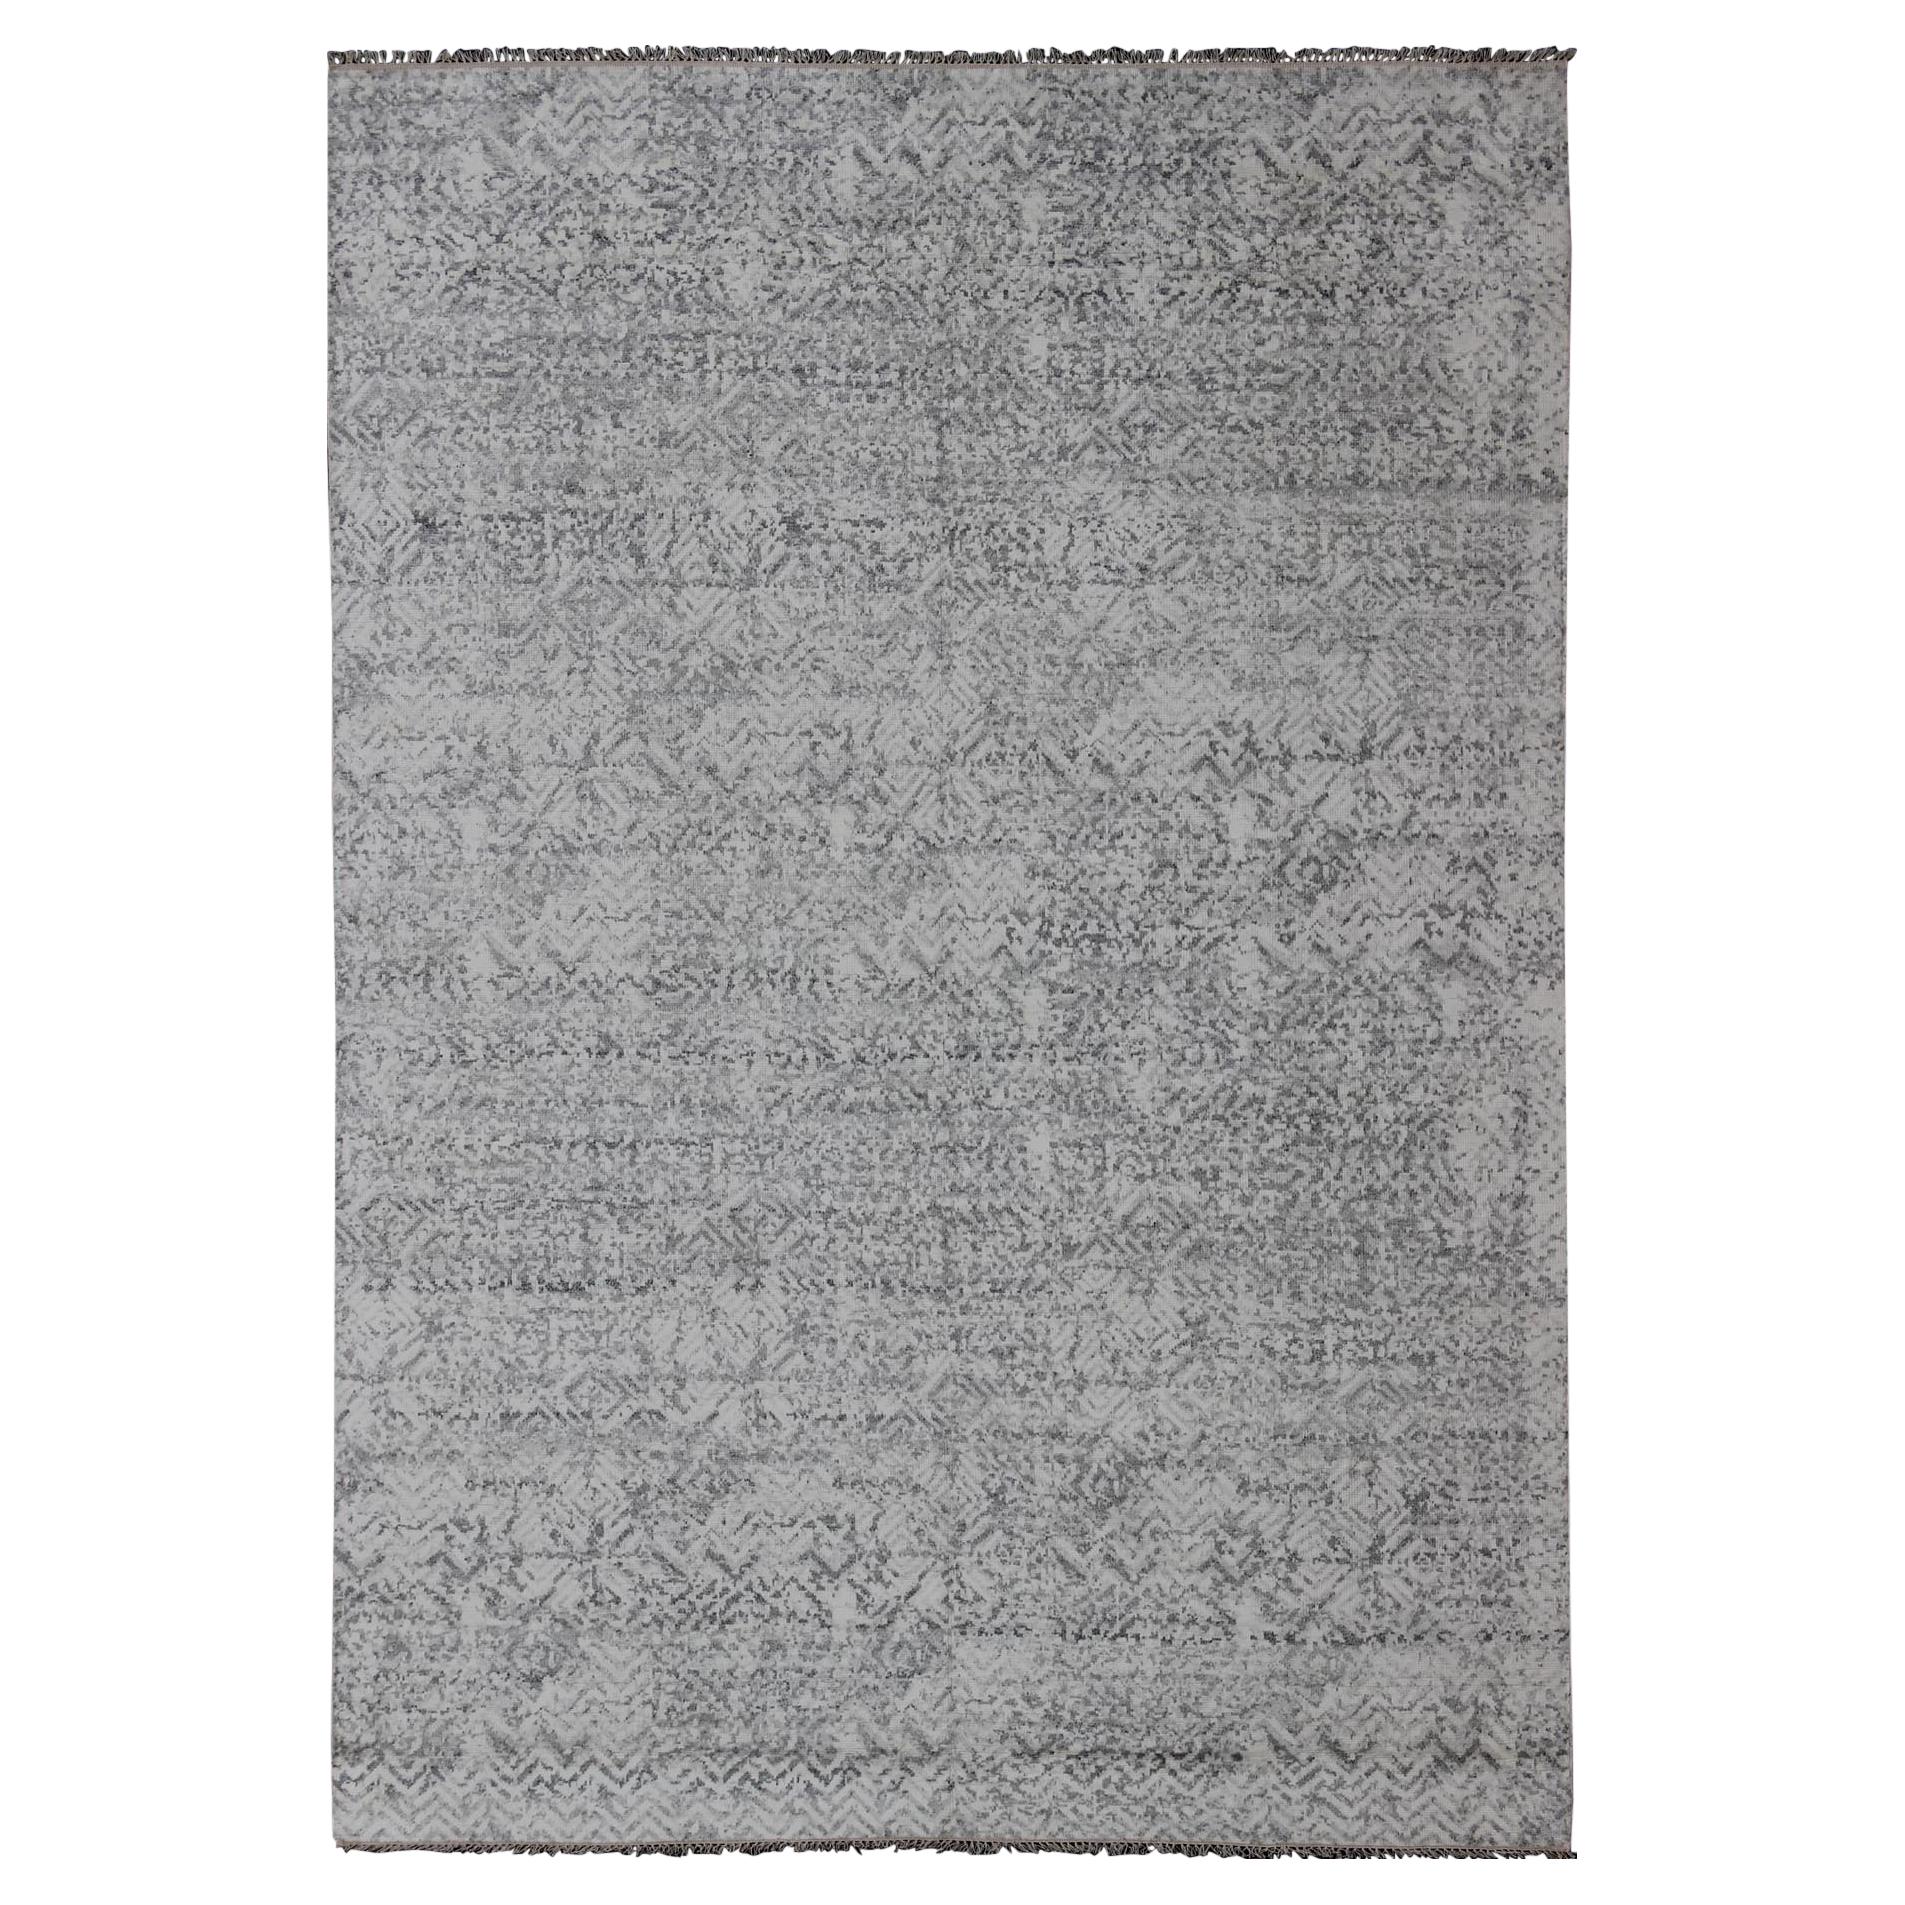 Grand tapis moderne à motif minimaliste sur toute sa surface en Lt. Ancien fusain, gris, argent